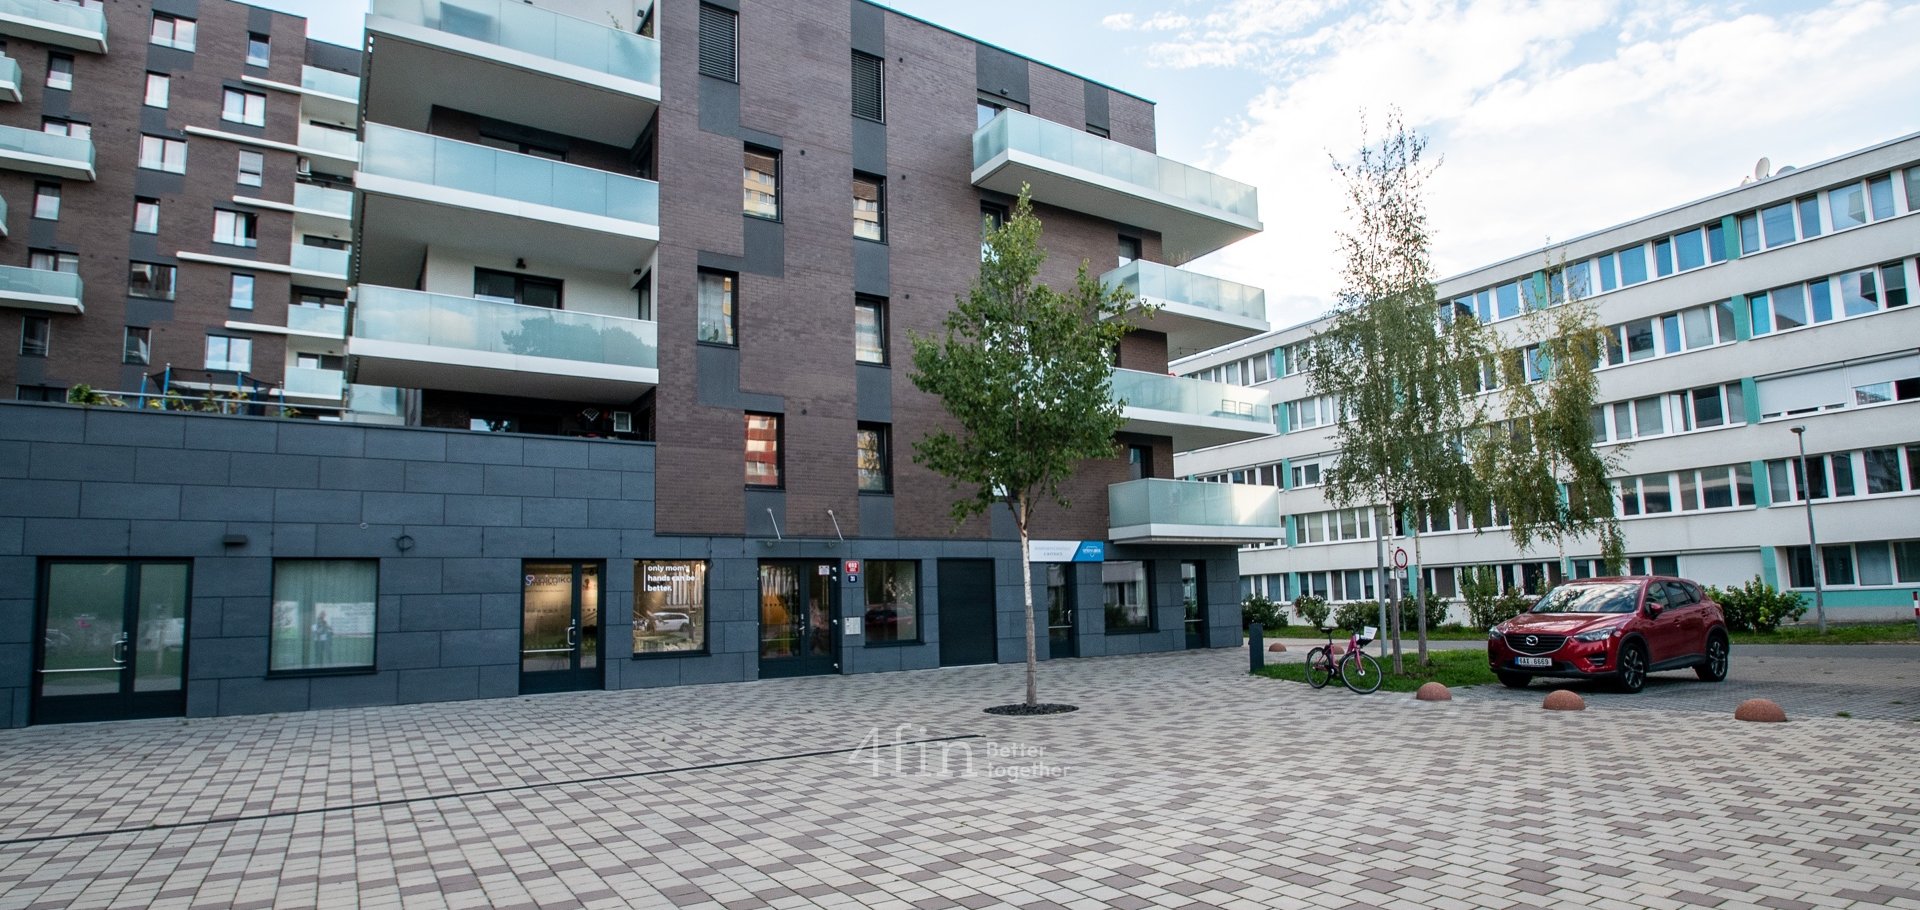 Slunný byt 3+kk, 110m2 v posledním nadzemním podlaží s terasou a vlastním parkovacím stáním